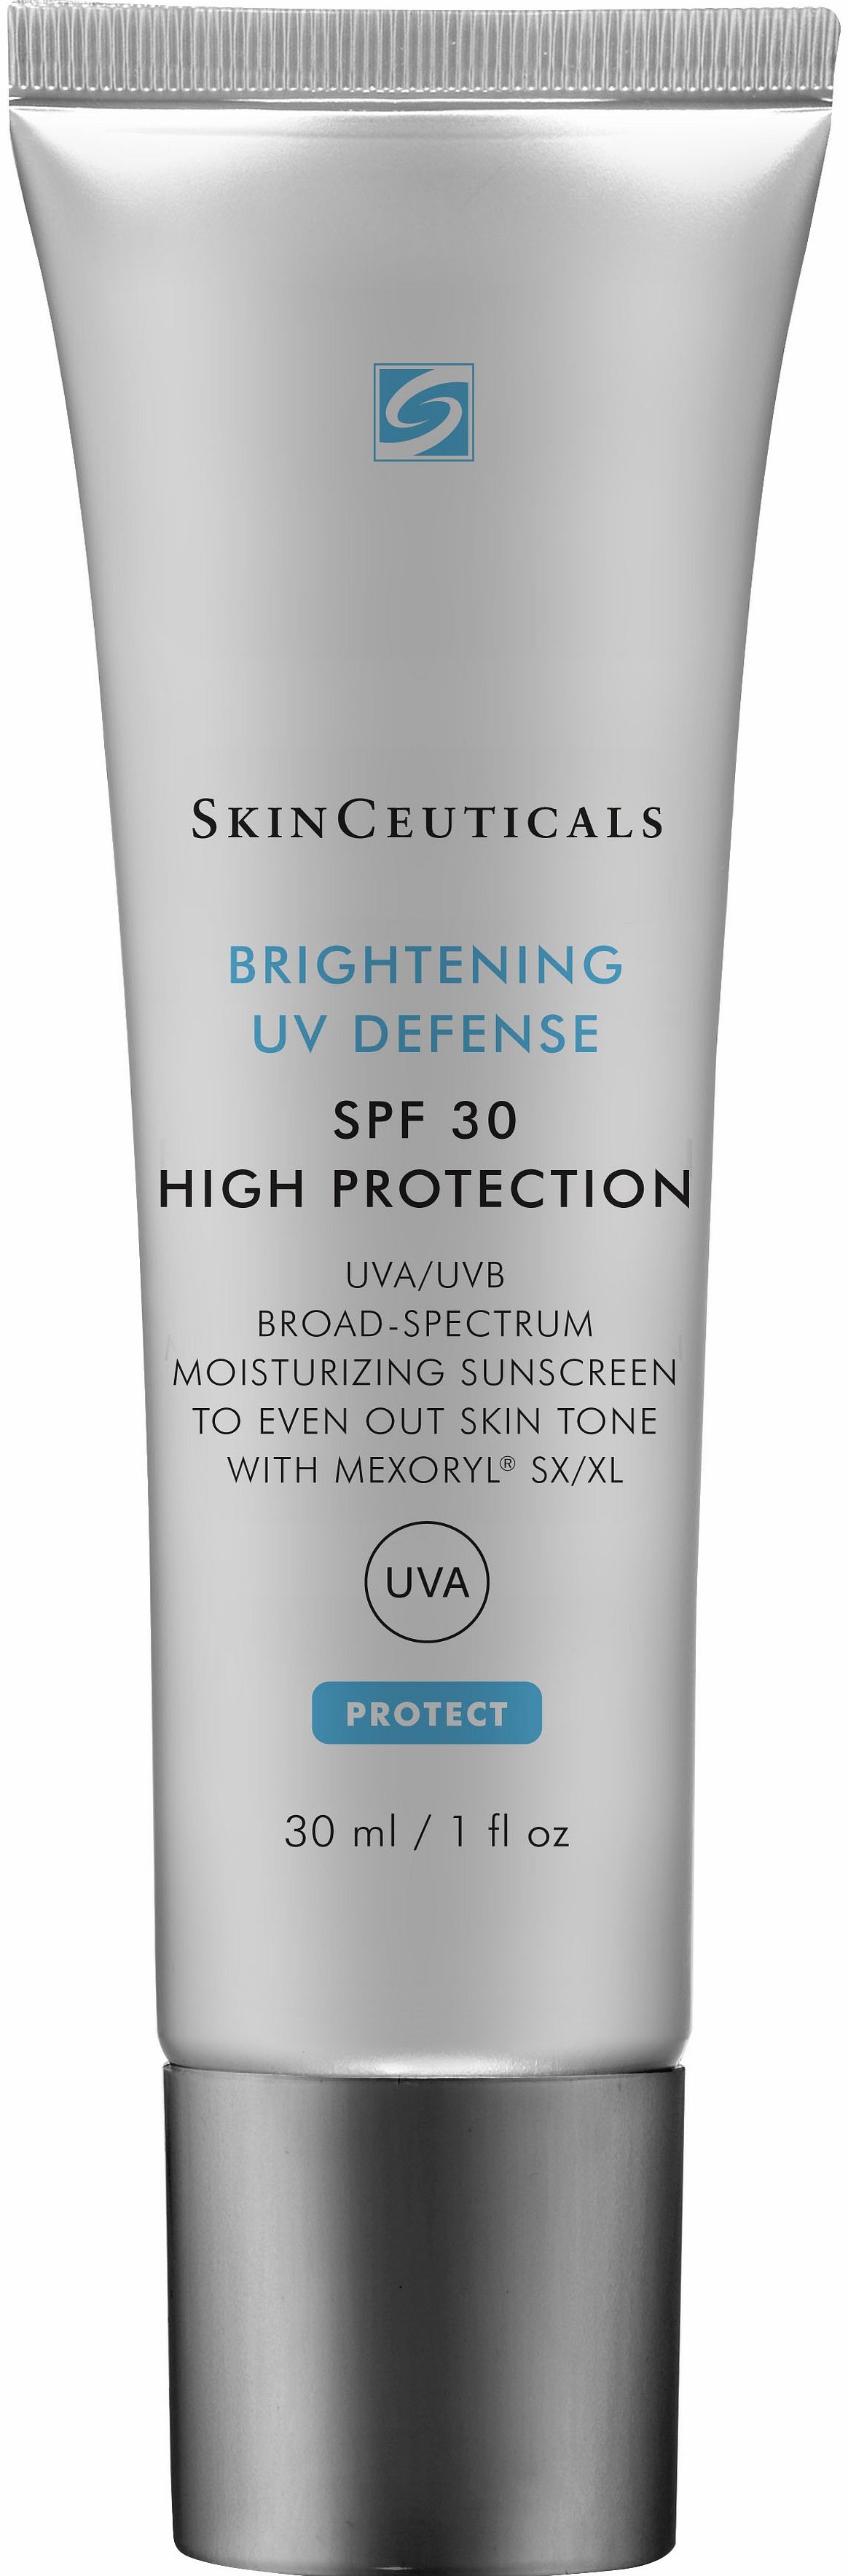 SkinCeuticals Brightening UV Defense SPF30 - 30ml